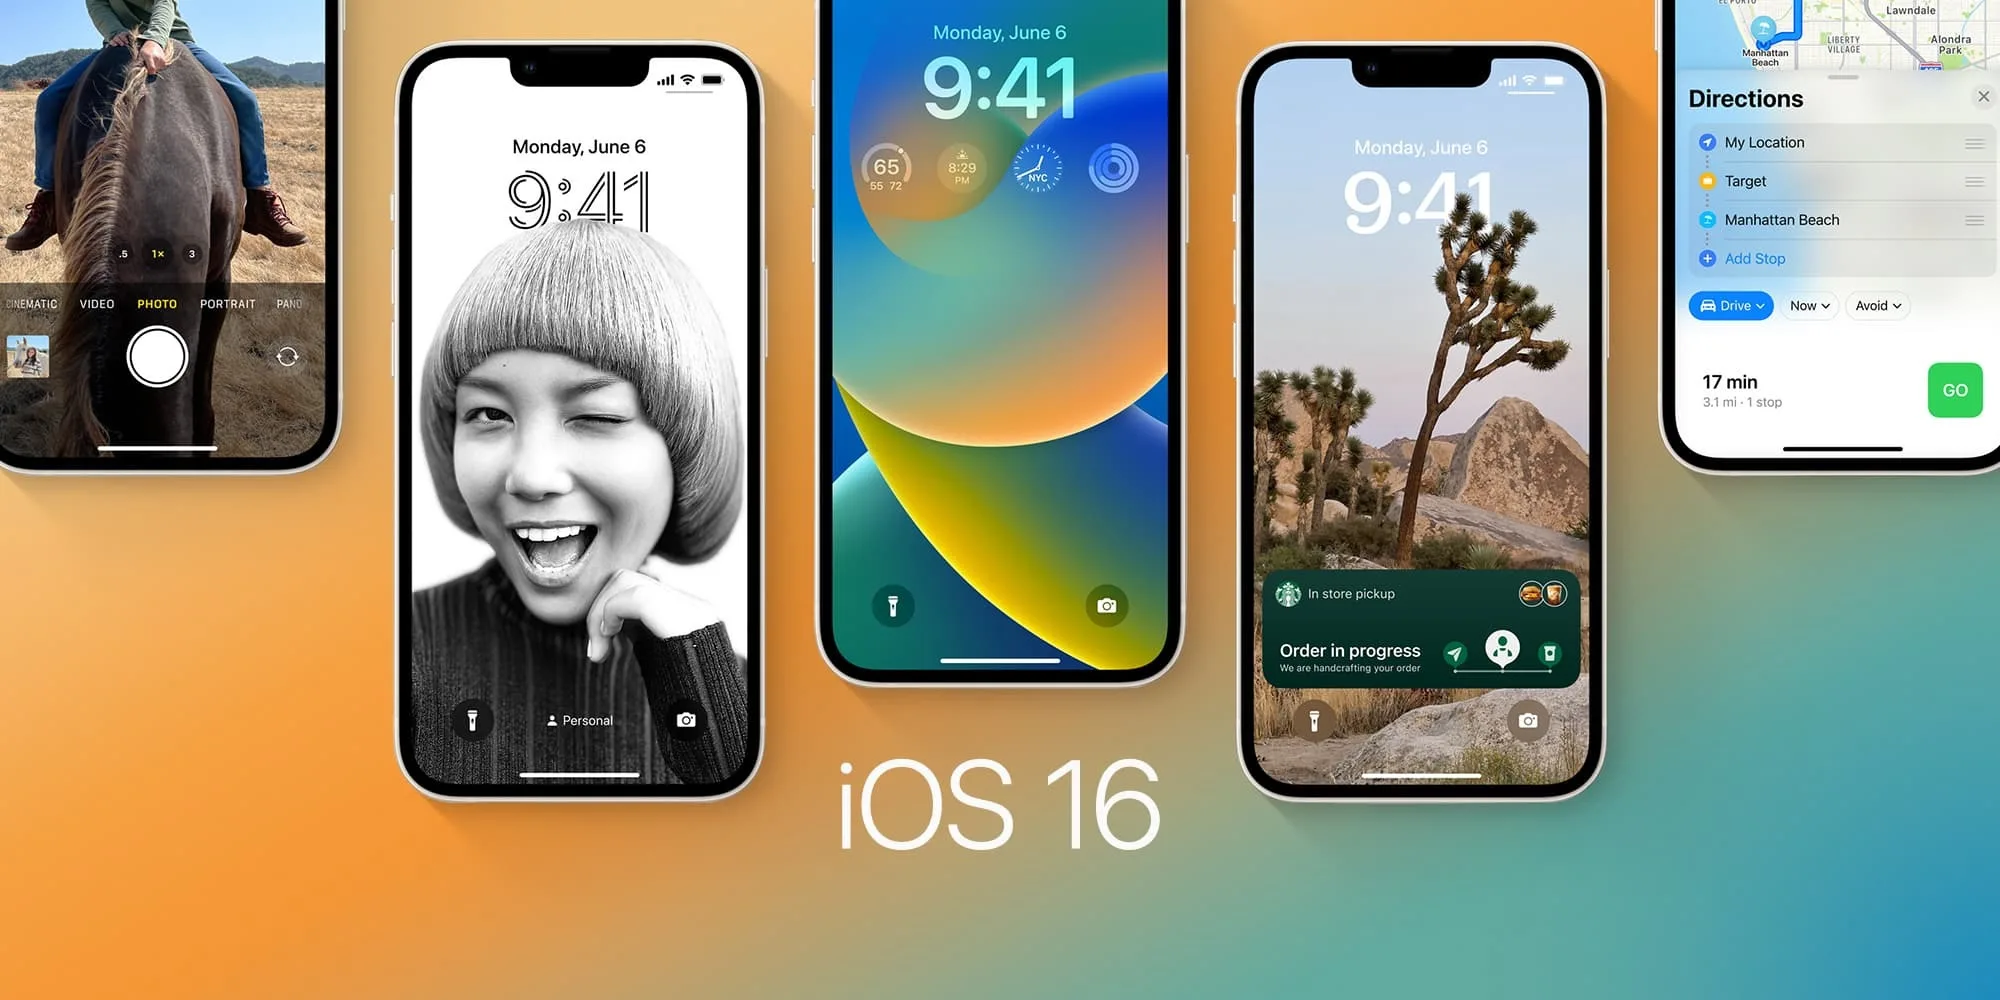 Σήμερα η κυκλοφορία του iOS 16 – Θα μπορείτε να σβήνετε μηνύματα που έχετε ήδη στείλει!